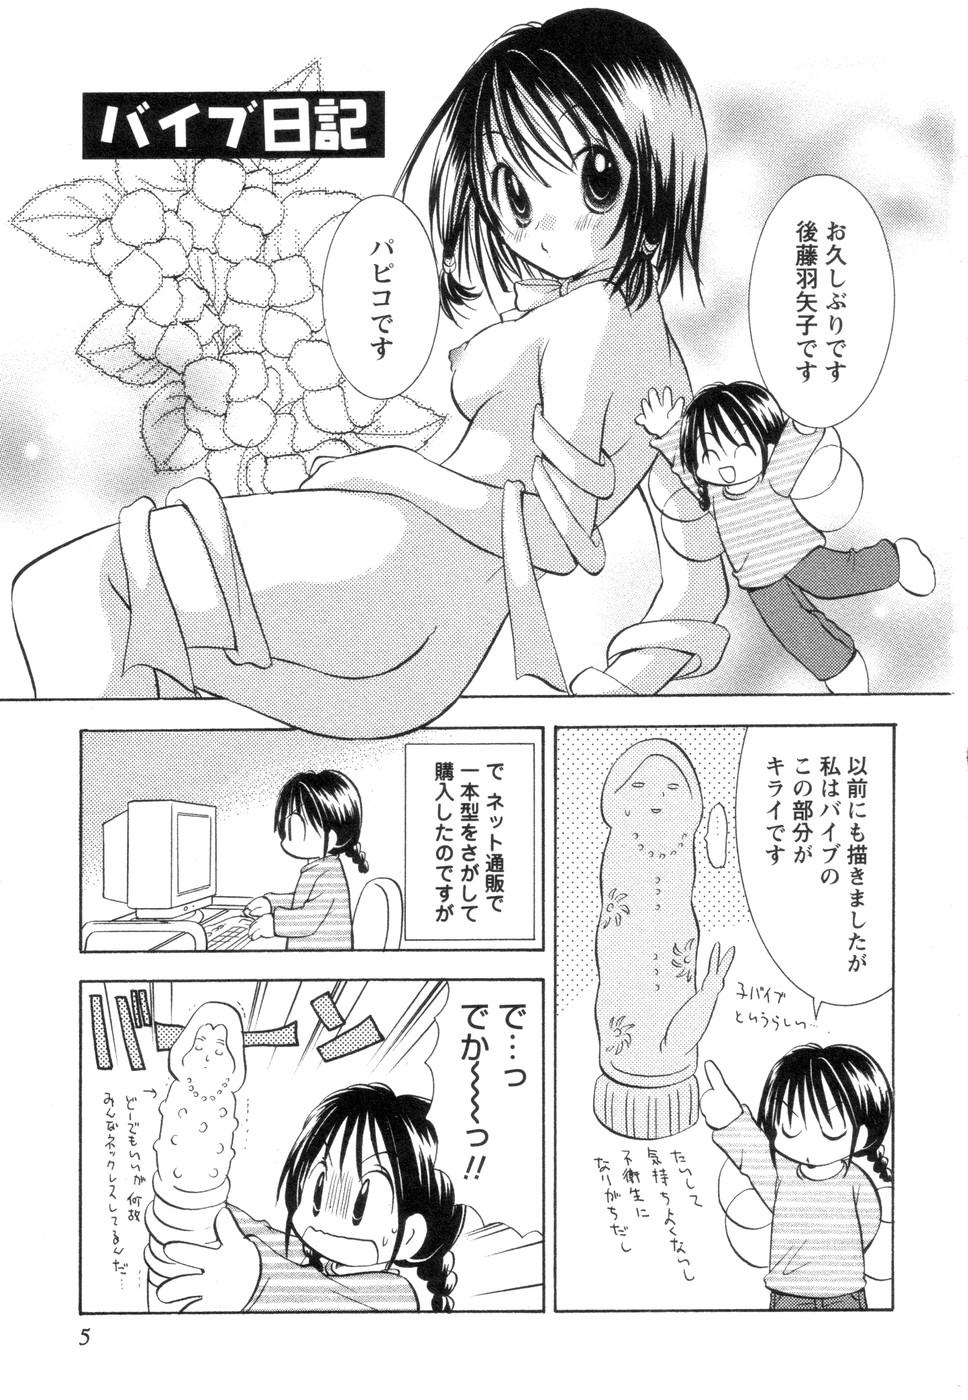 Petite Jitsuroku Desuyo! Payapaya Life 2 Story - Page 9